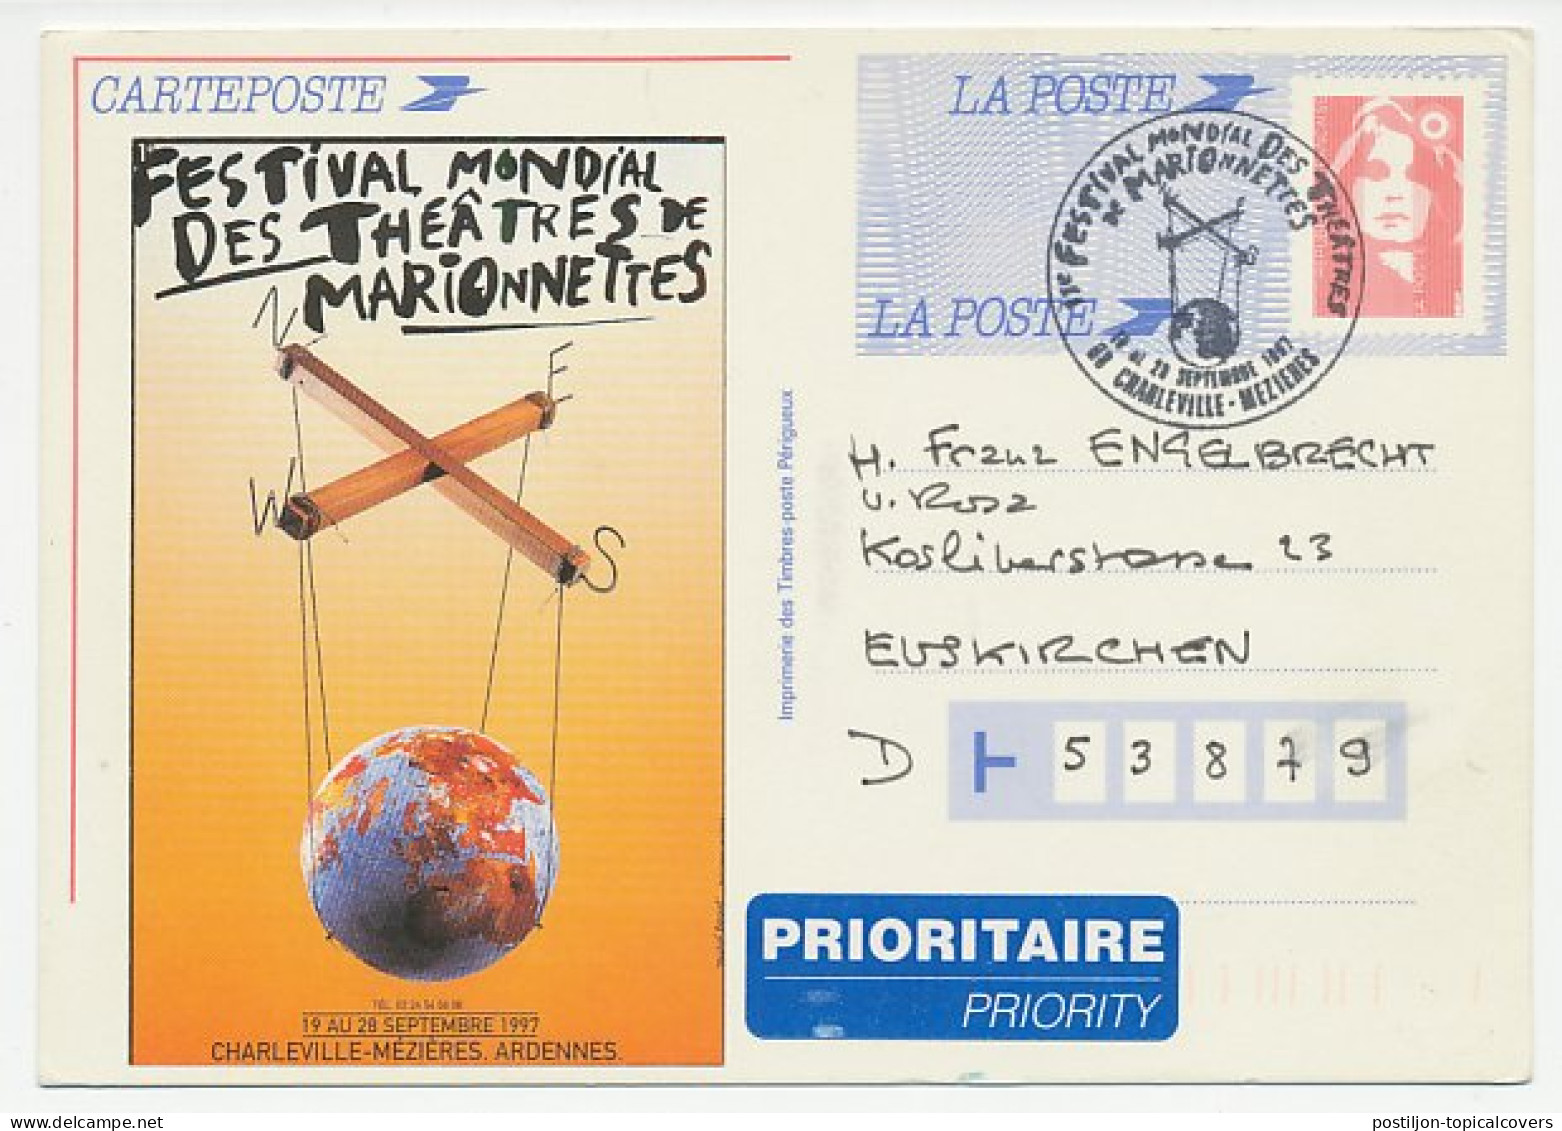 Postal Stationery / Postmark France 1997 World Festival - Marionette - Puppet. Globe On Left Side Is Vignette - Not Pri - Theater